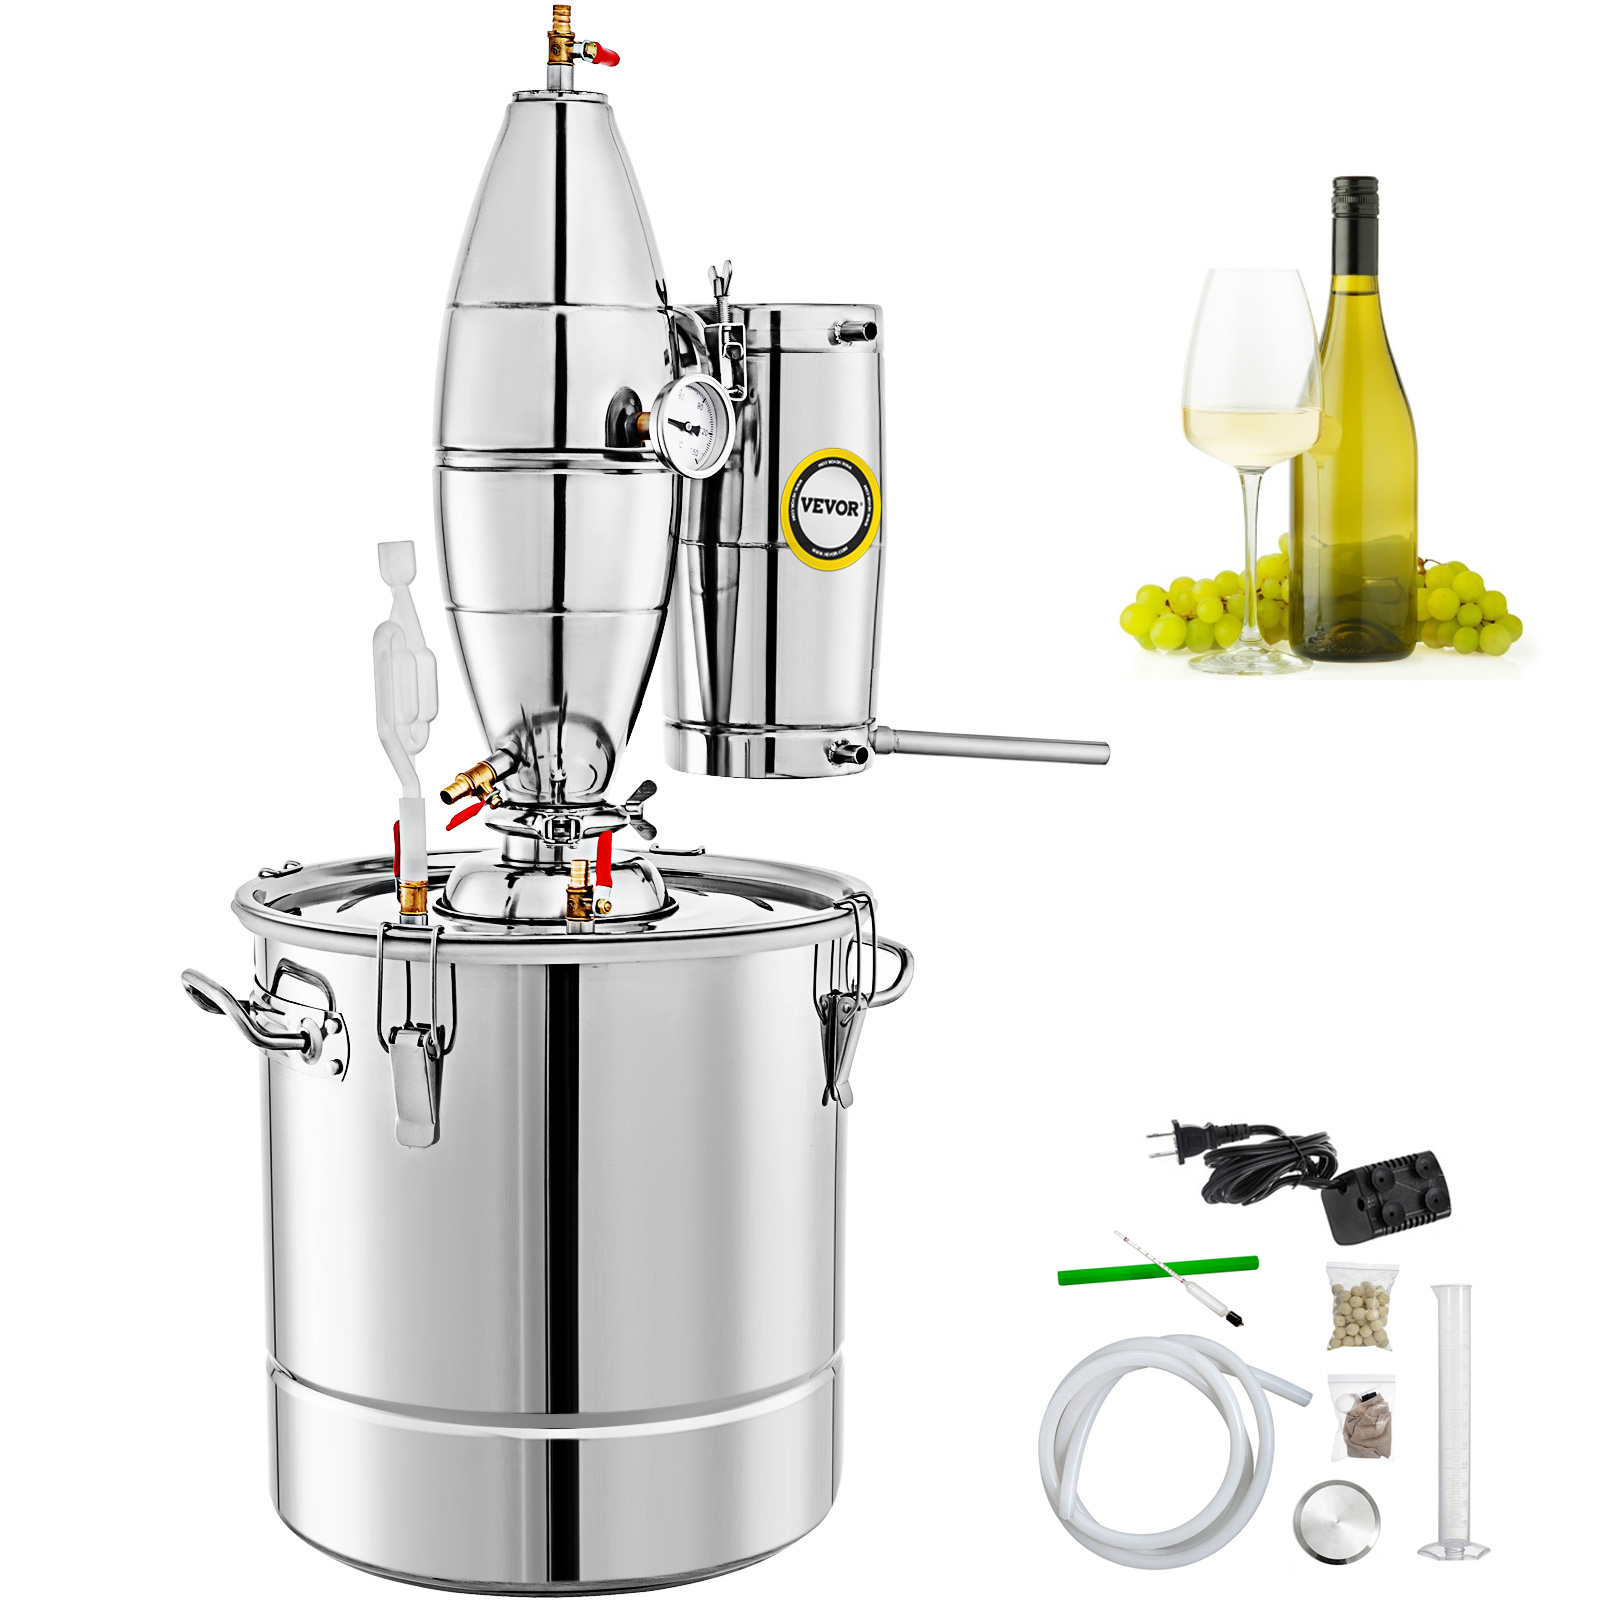 Stainless 8G Alcohol Distiller Brewing Kit Moonshine 30L Still Wine Boiler Home 